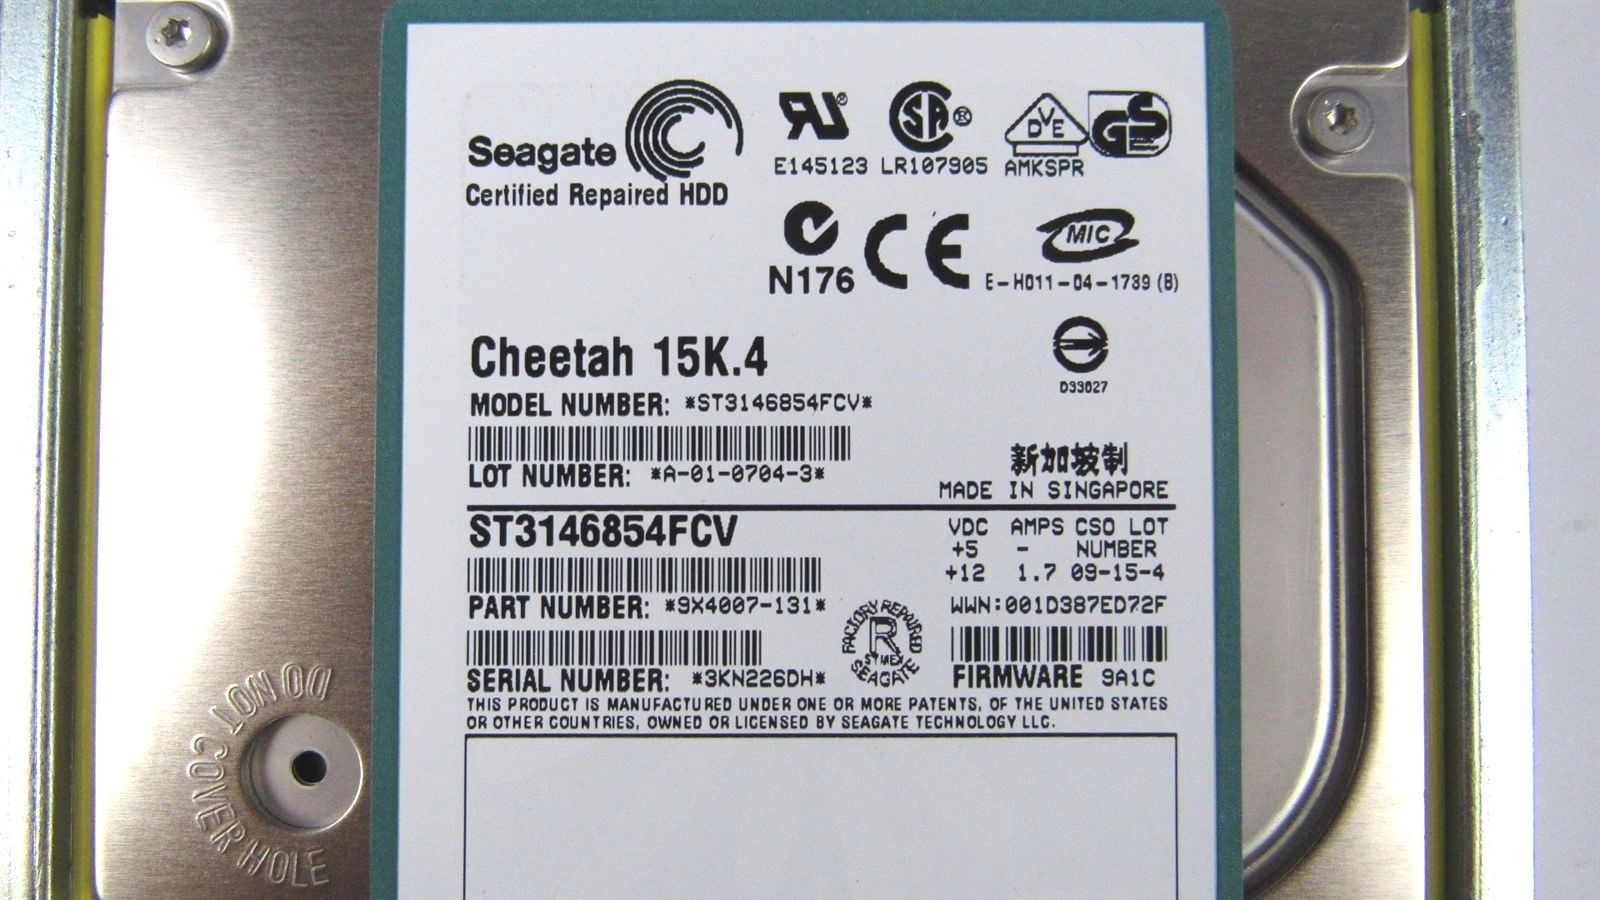 Seagate Cheetah 146Gb 15K.4 ST3146854FCV 9X4007-131 3KN226DH HDD w/ Tray YF744